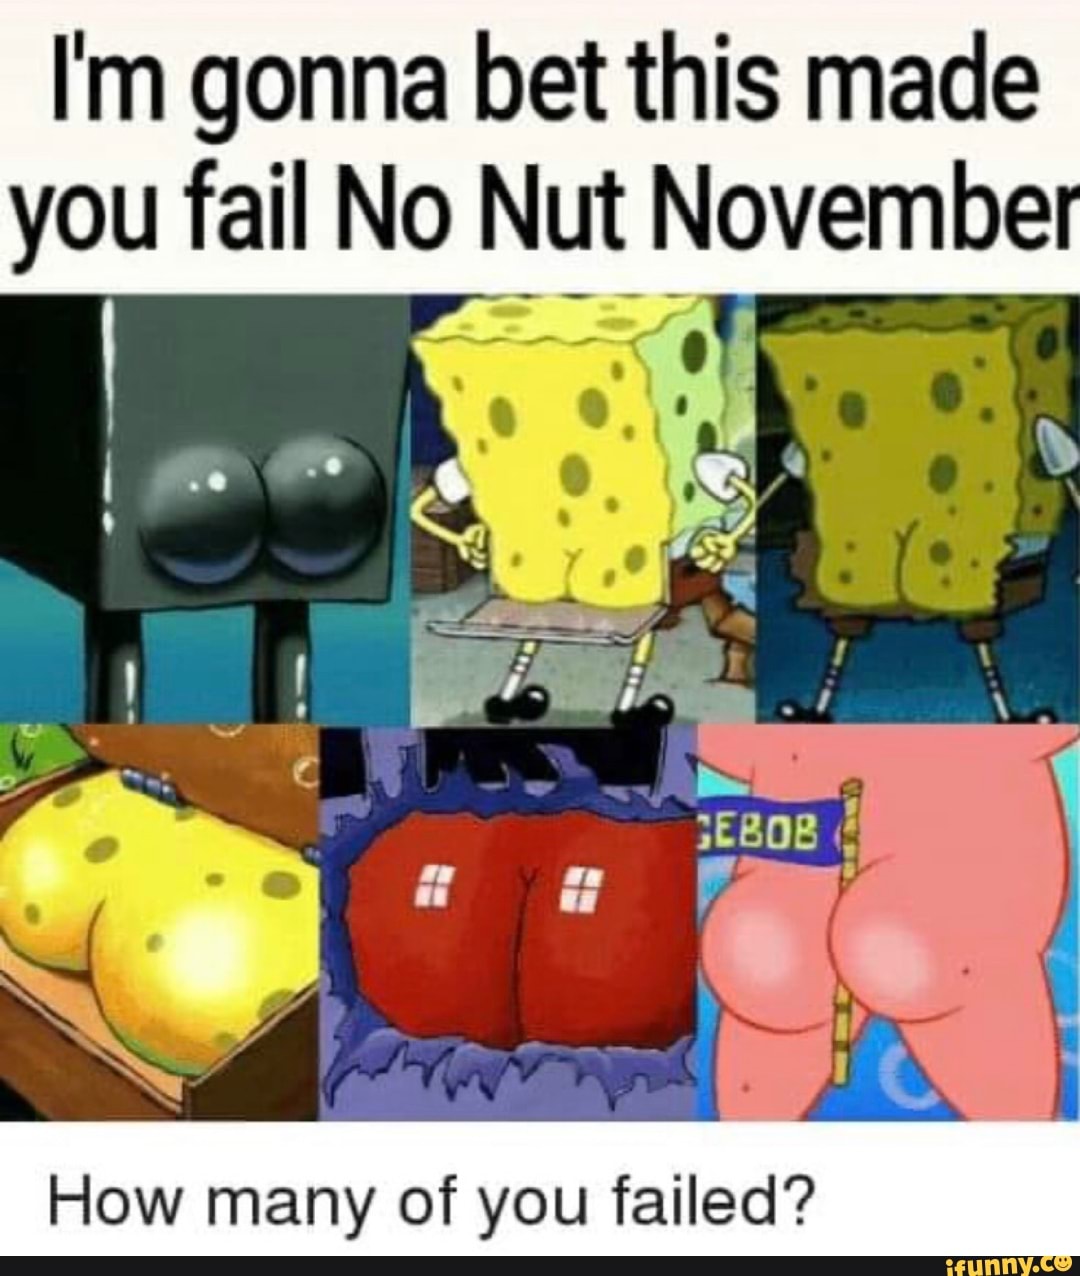 How many people failed no nut november